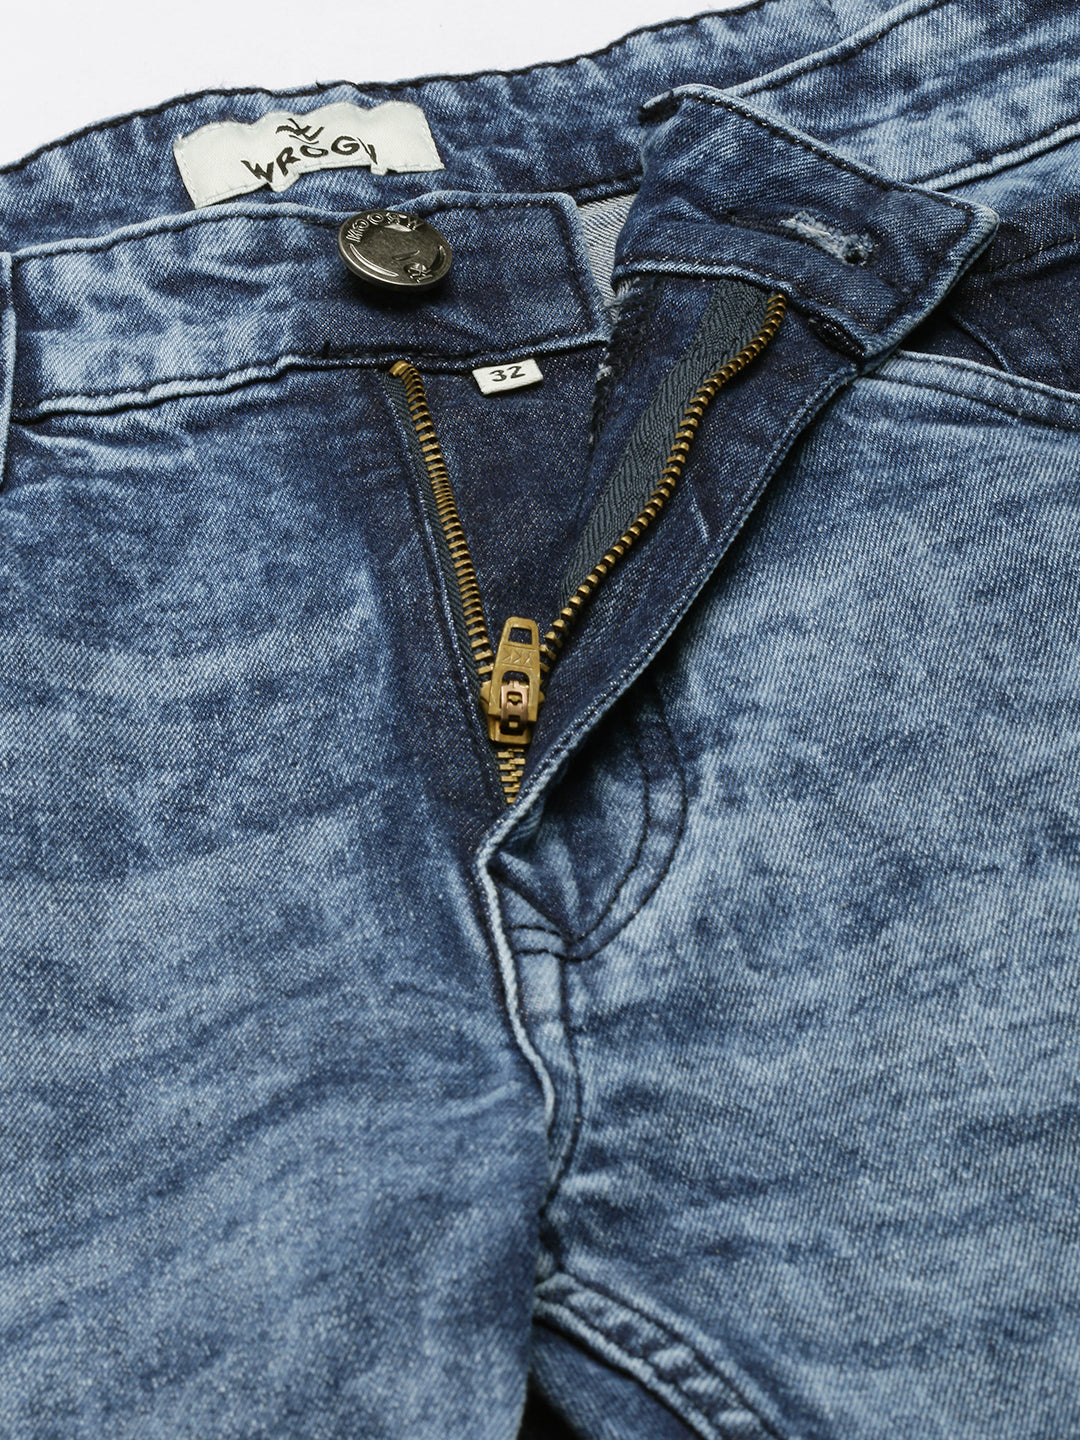 Vintage Washed Blue Jeans